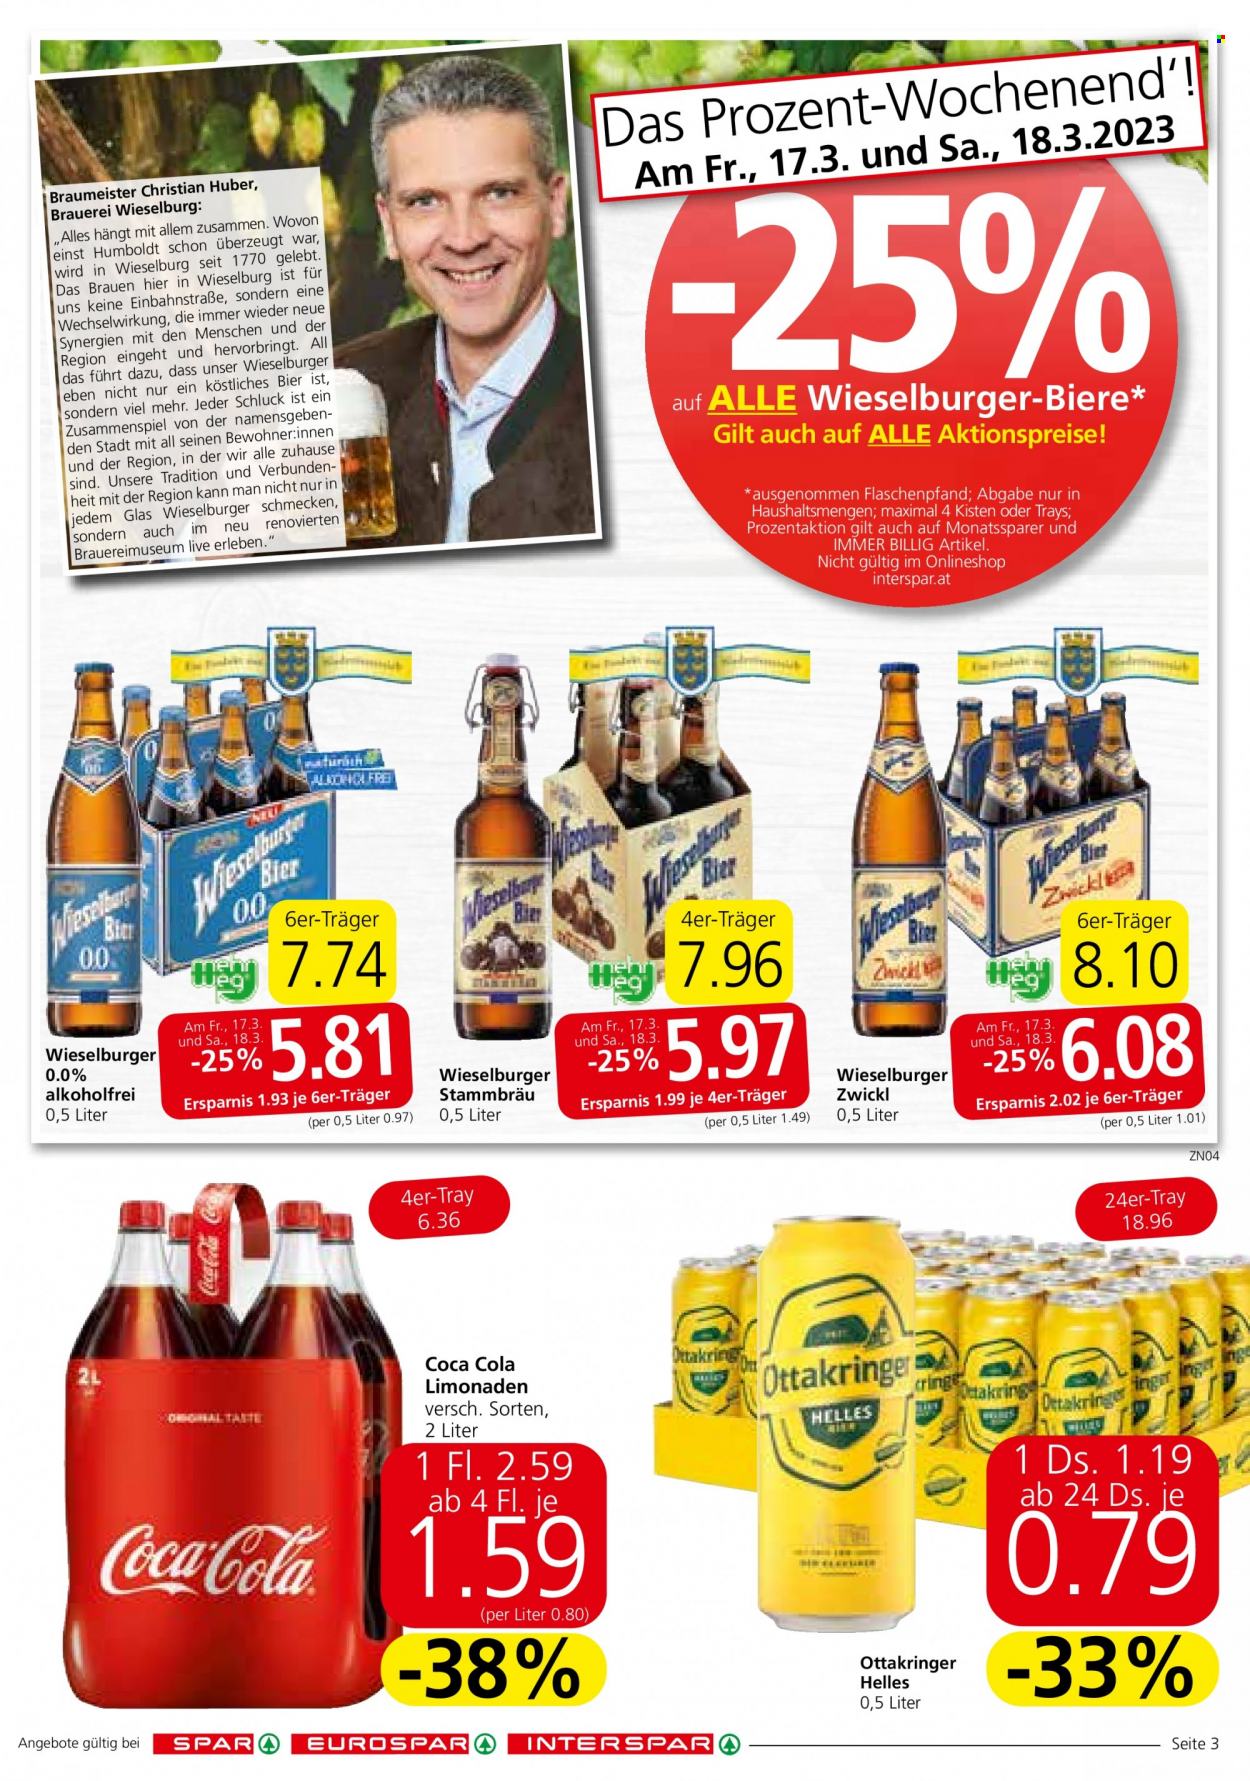 Angebote SPAR - 16.3.2023 - 29.3.2023 - Verkaufsprodukte - Coca-Cola, Cola, Getränk, Limonade. Seite 3.